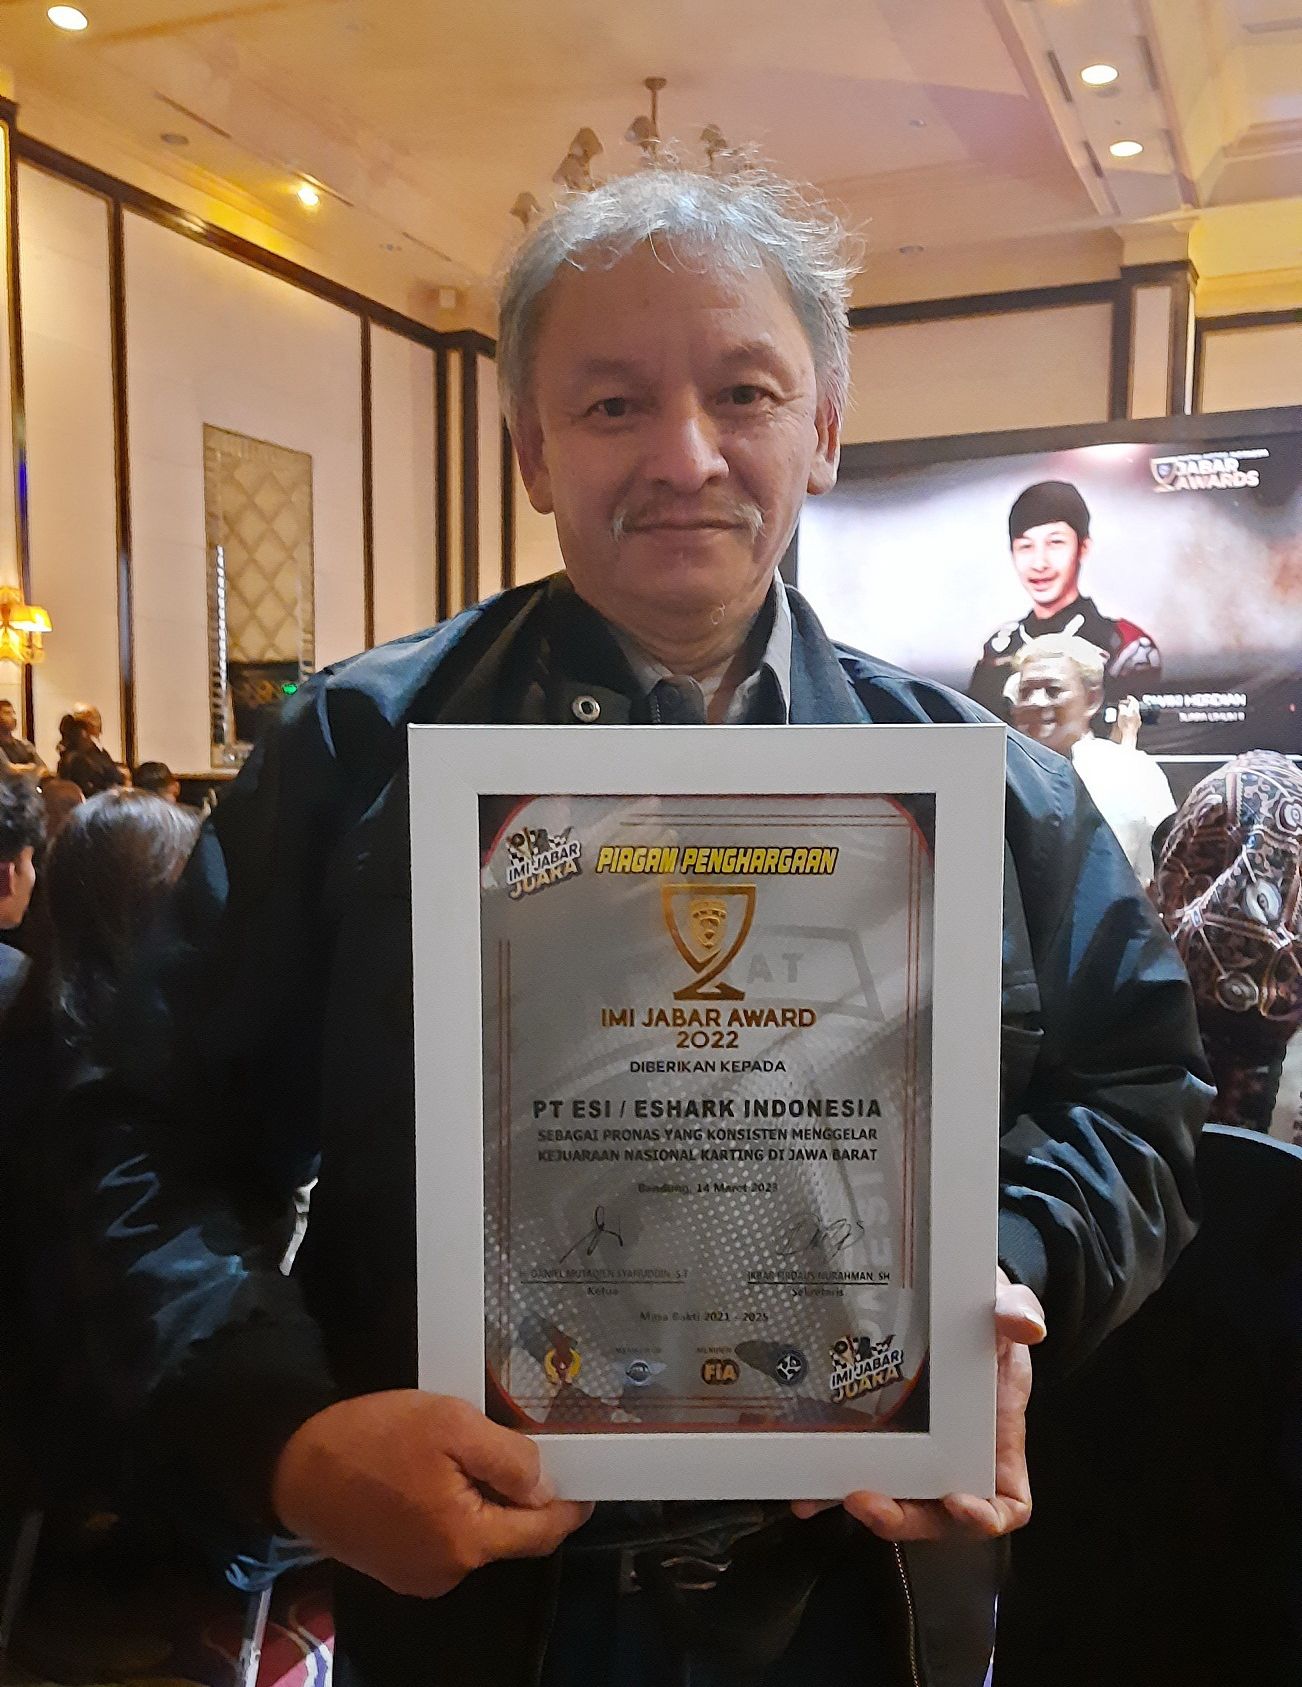 Christian yang hadir di acara IMI Jabar Award sebagai penerima penghargaan mewakili PT ESI Eshark Indonesia sebagai promotor   nasional yang konsisten menggelar Kejuaraan Nasional Karting di Jawa Barat.*   